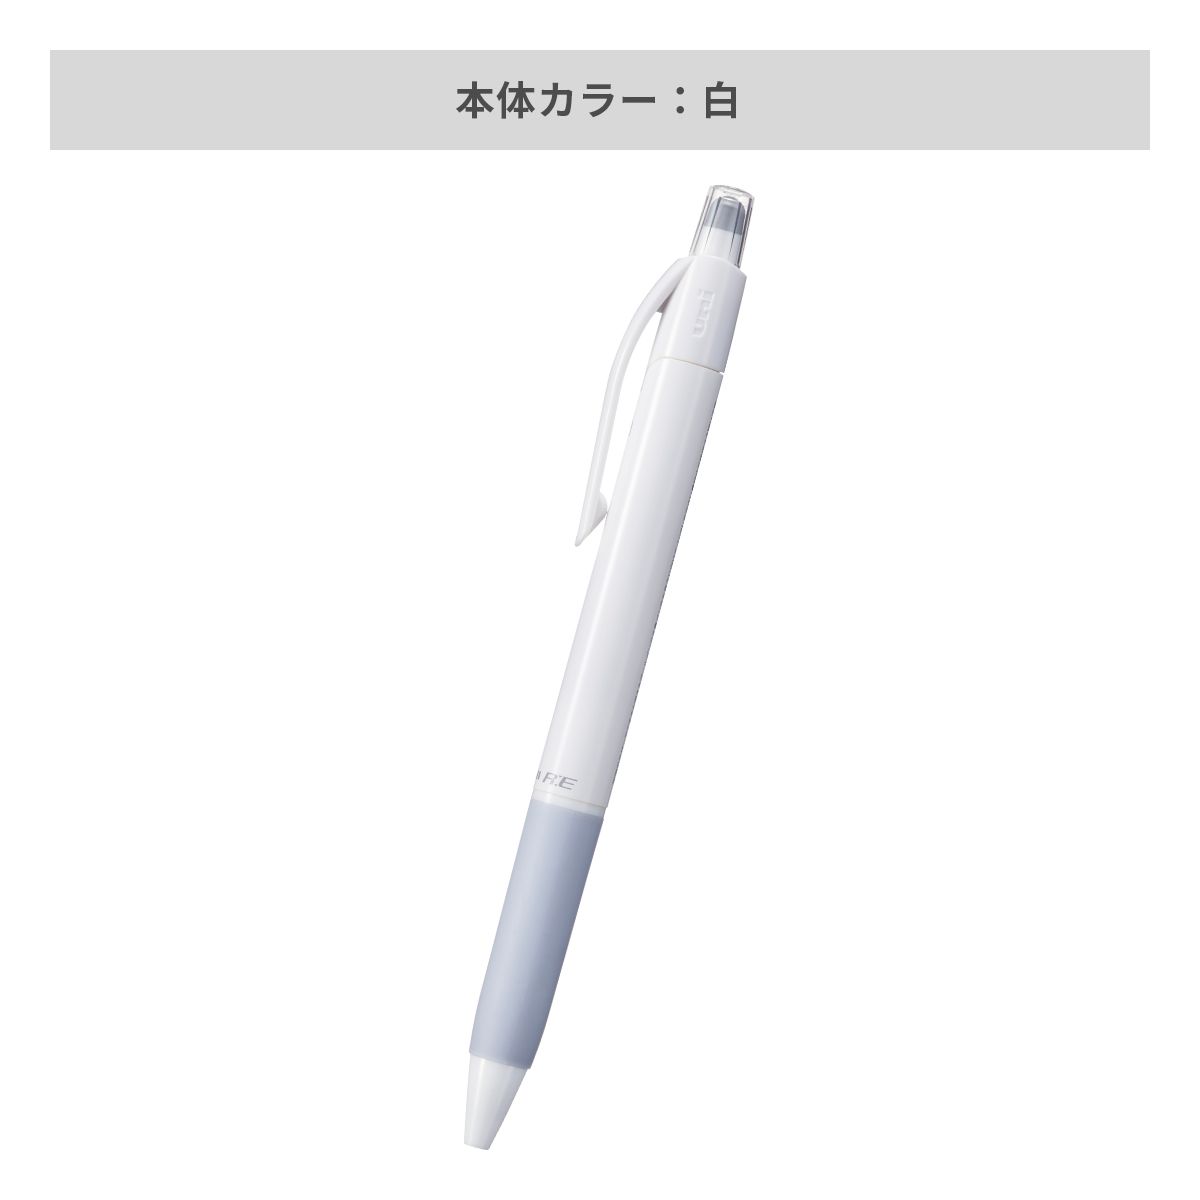 三菱鉛筆 ユニボール アールイー 白軸 0.5mm【名入れボールペン / パッド印刷】 画像4